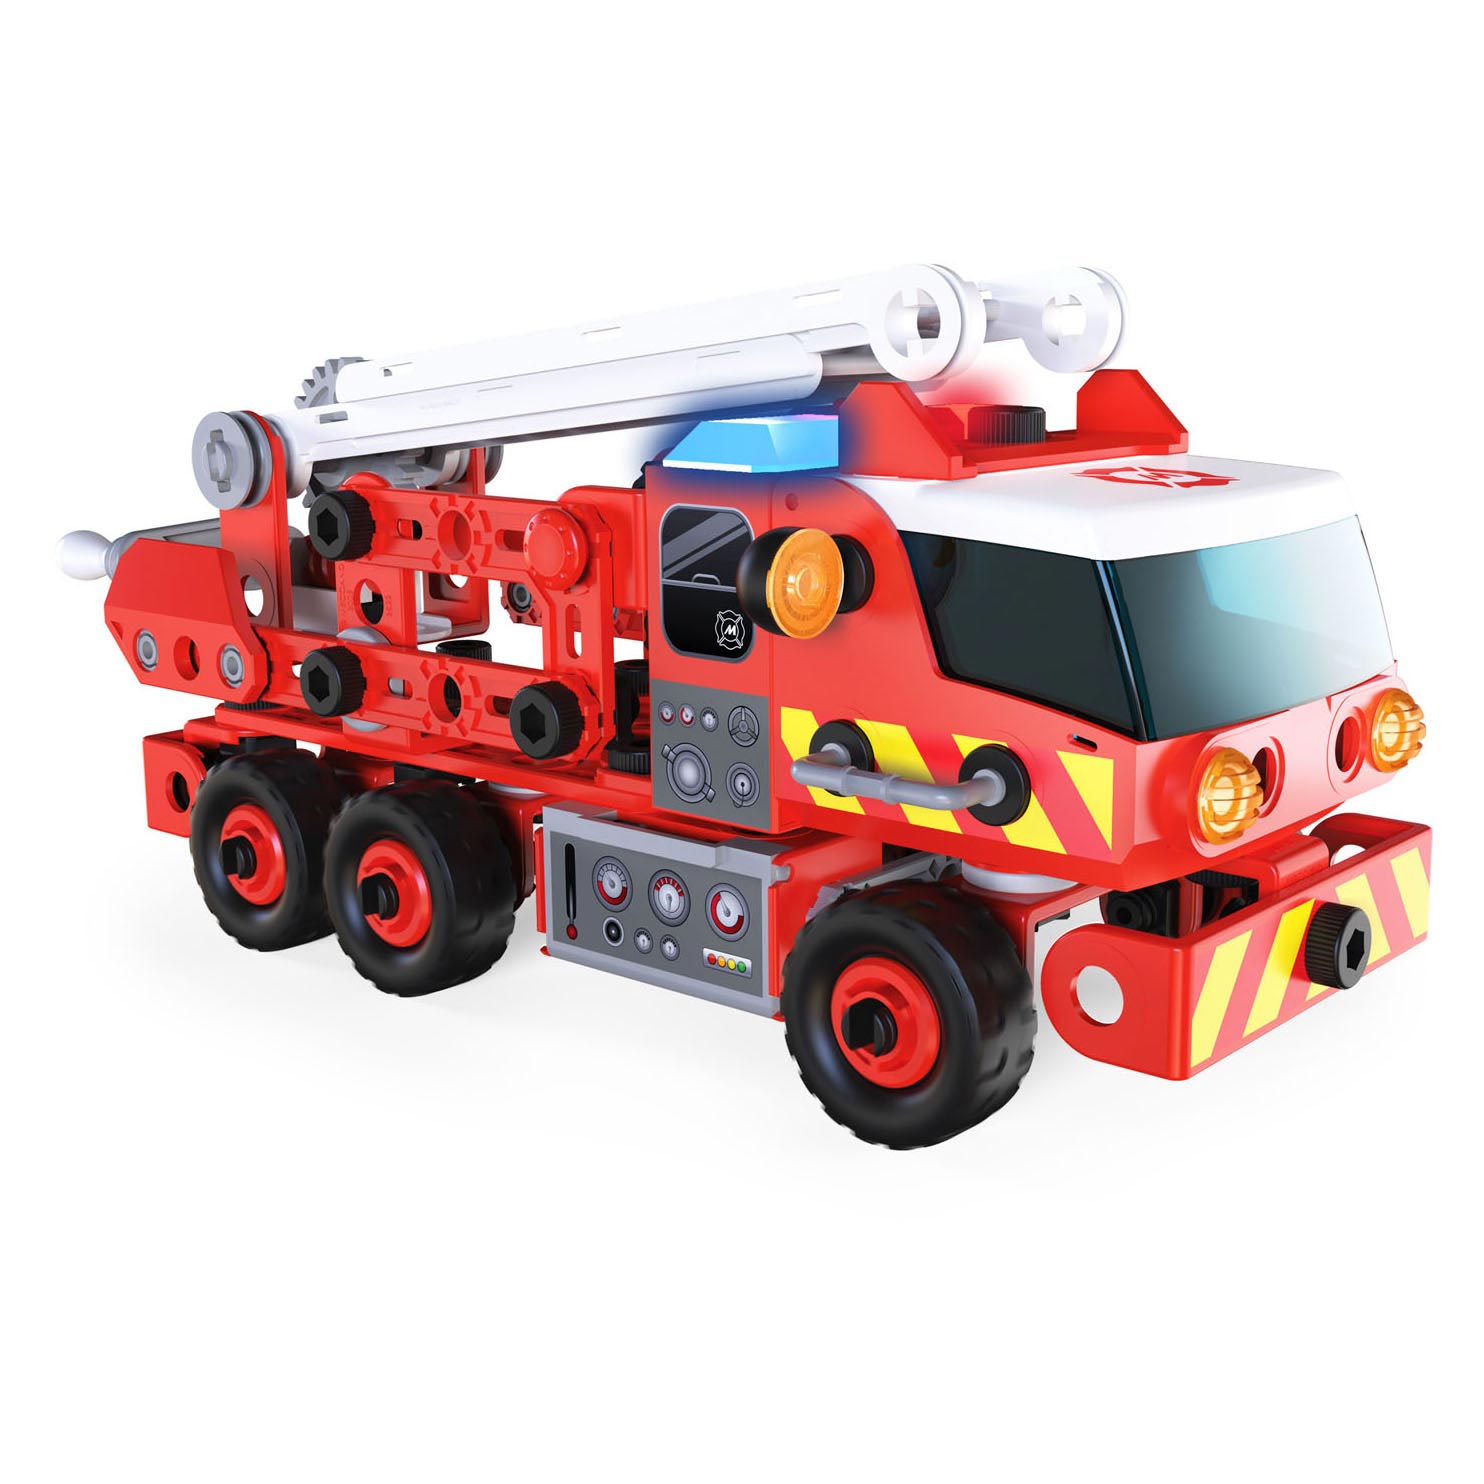 Meccano Junior - Camion de pompier STEAM Jouets de construction